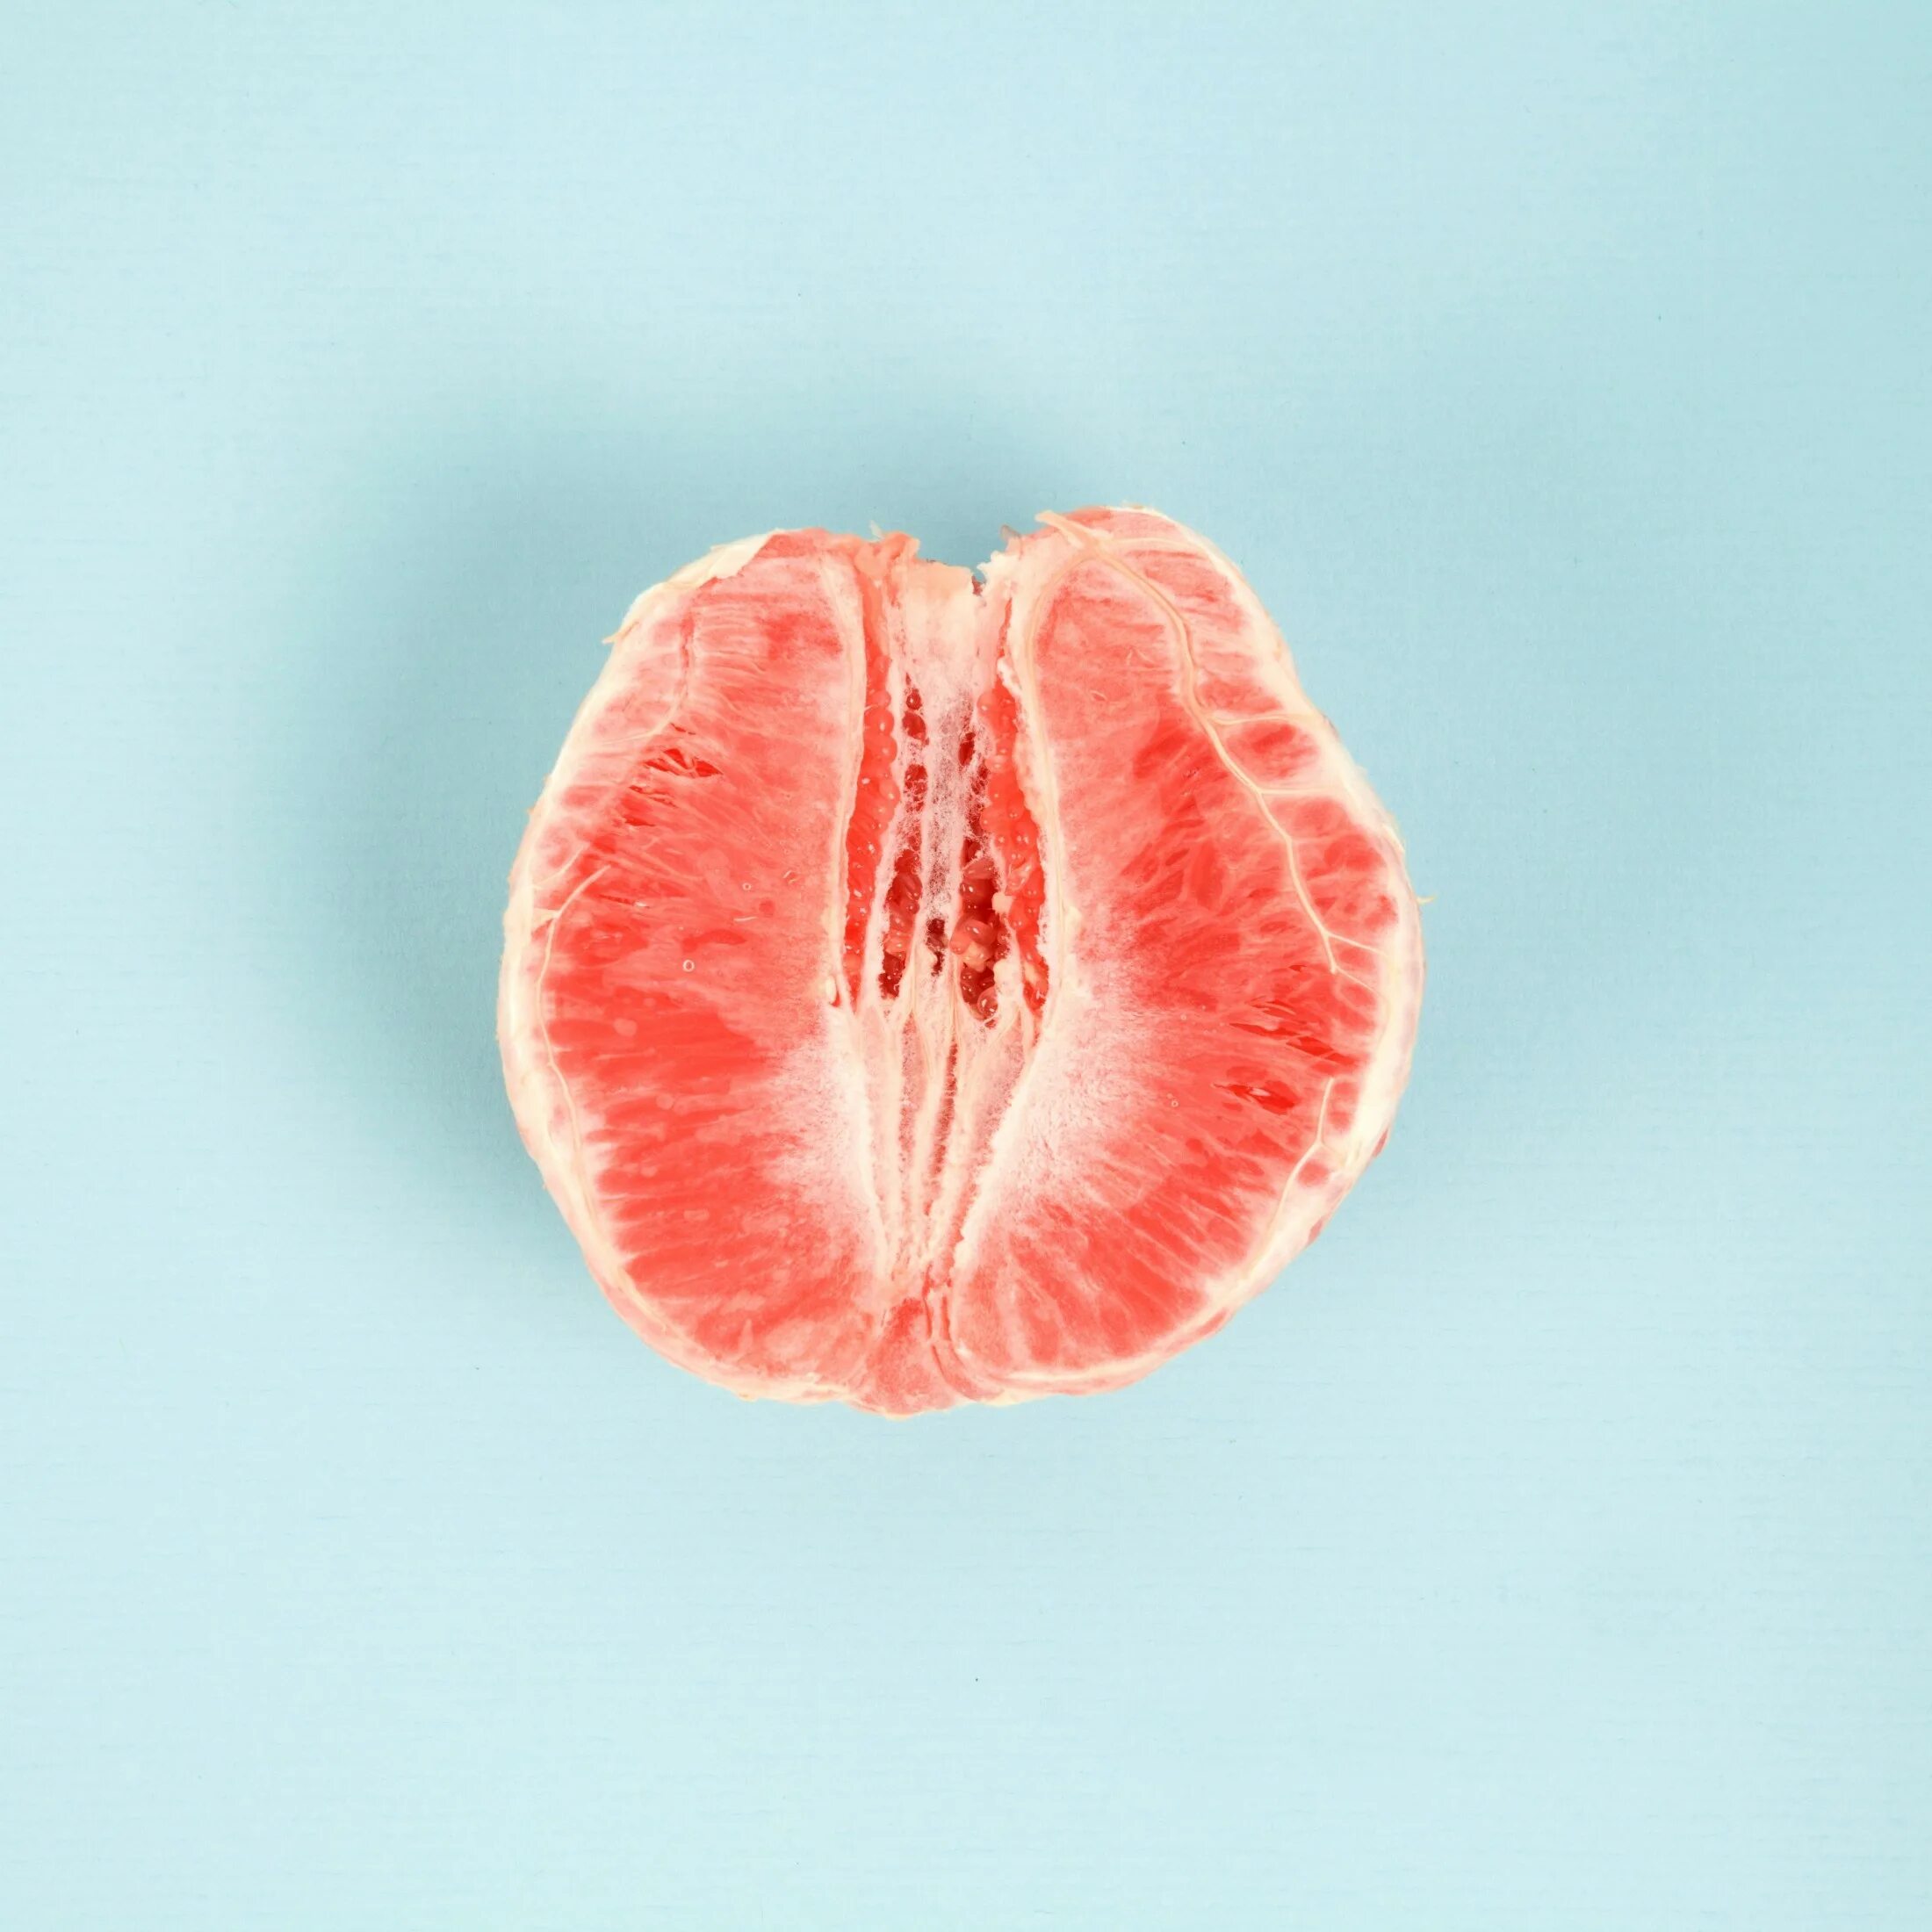 Женский половой персик. Грейпфрут в разрезе. Фрукты похожие на влагалище. Половинка грейпфрута. Фрукт похожий на женские гениталии.